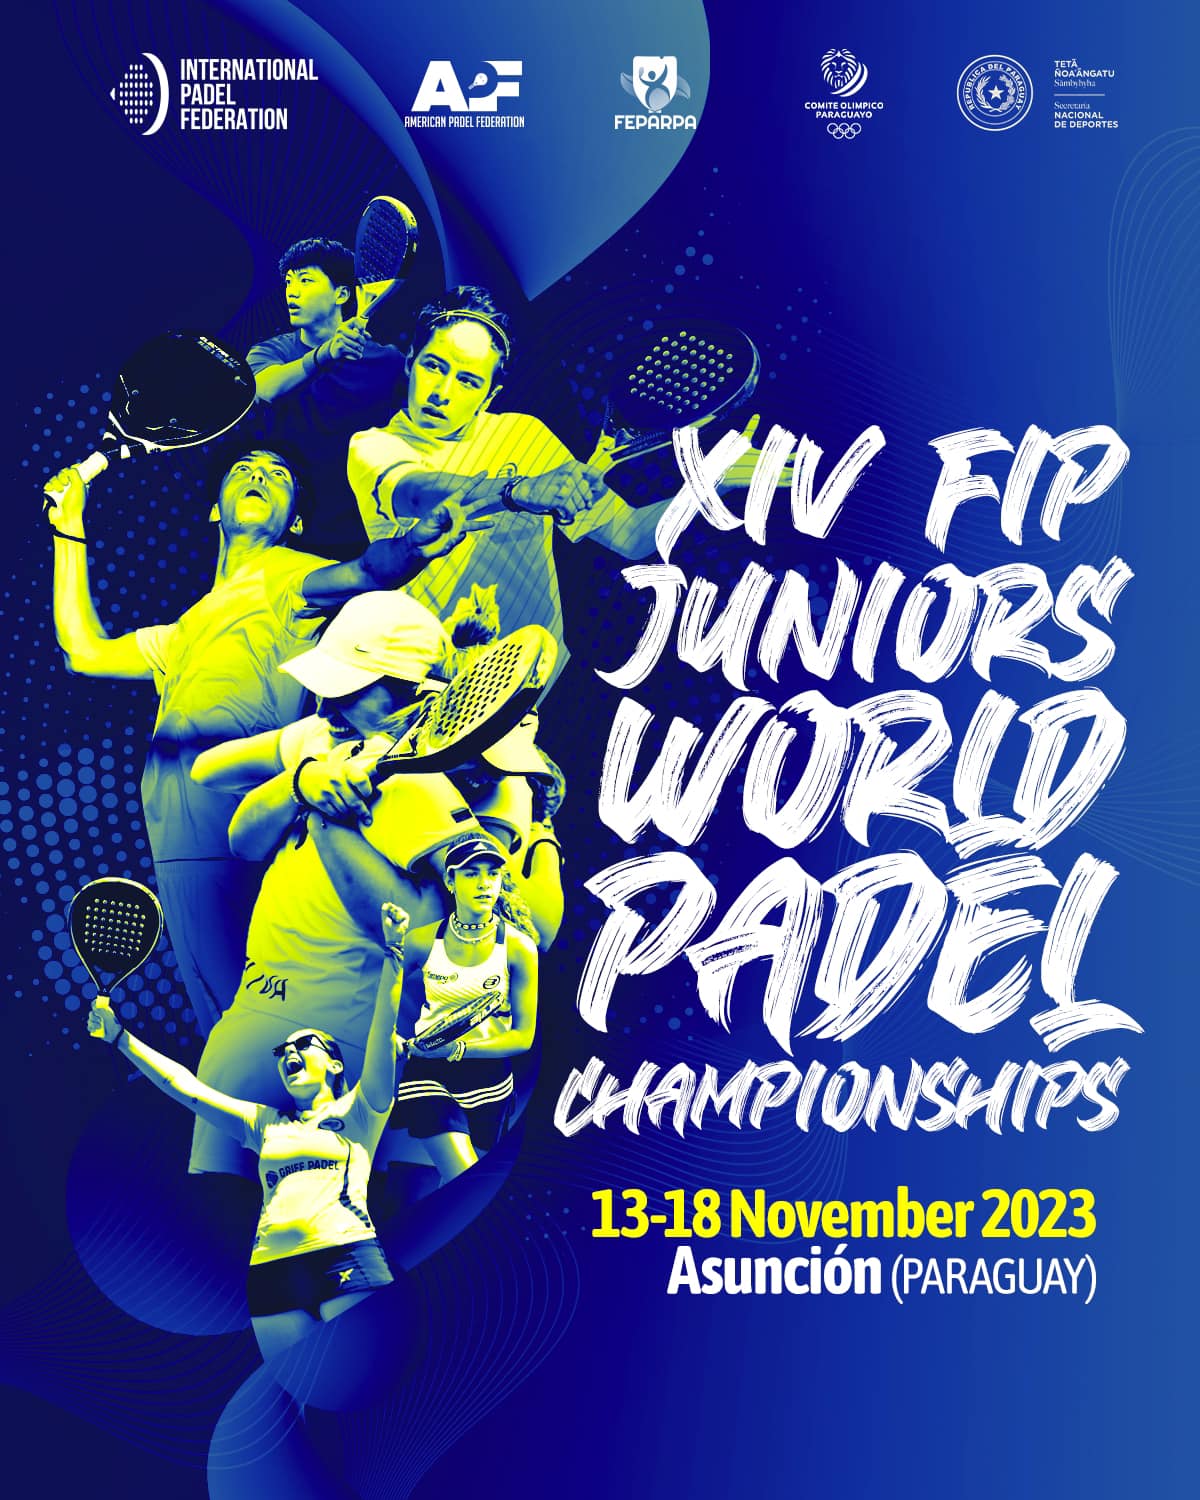 Els XIV Campionats del Món padel júnior al Paraguai